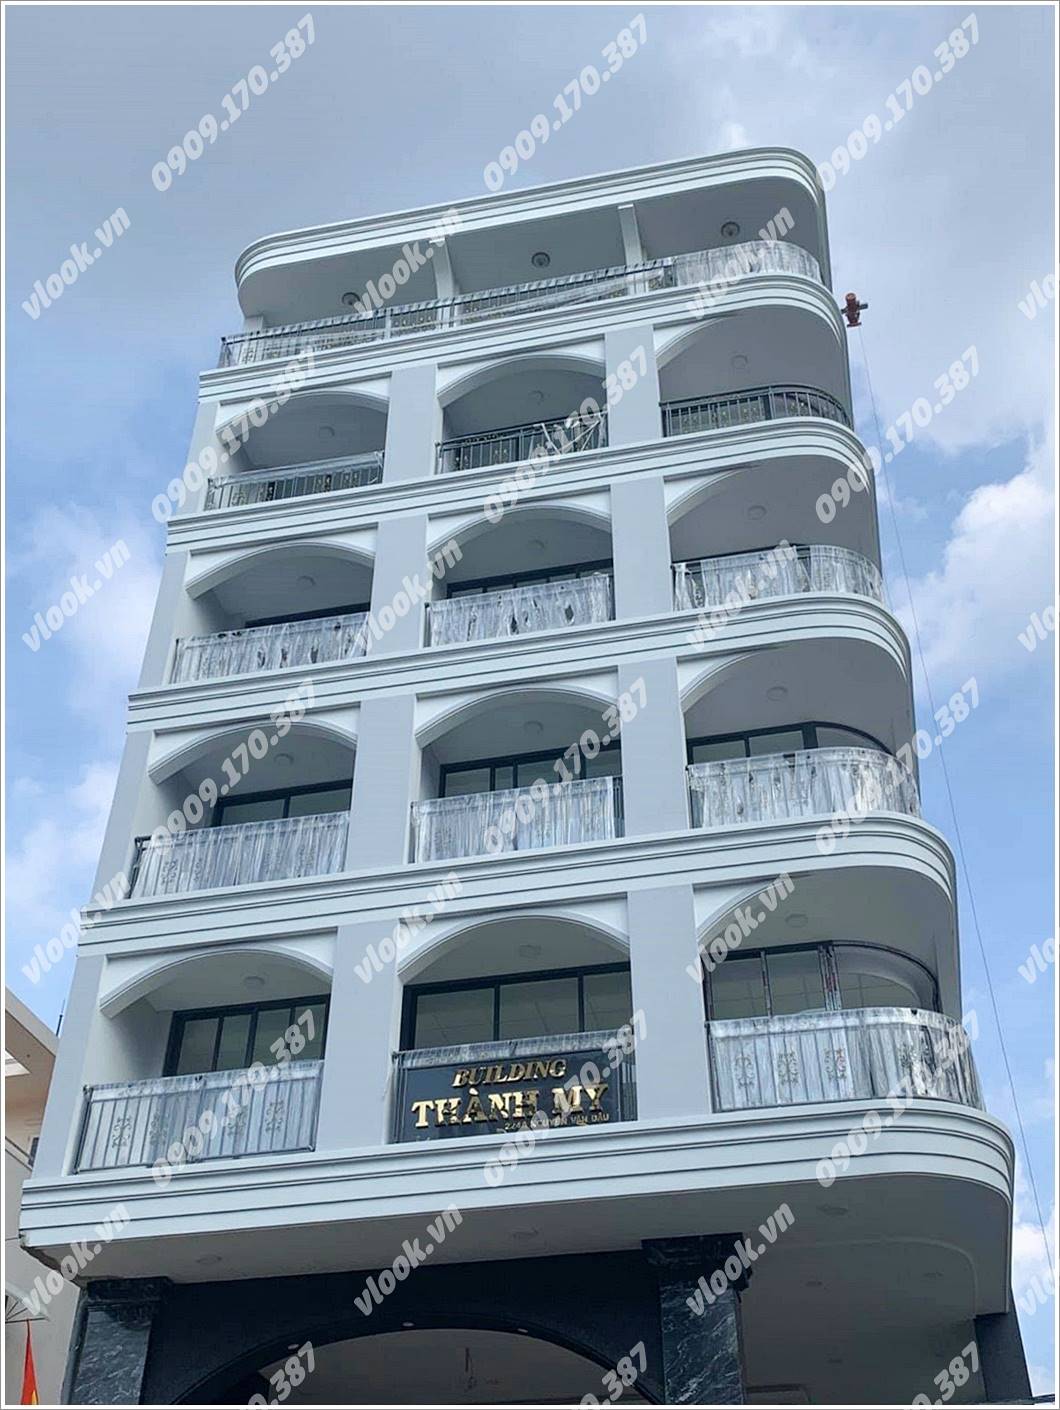 Cao ốc cho thuê văn phòng tòa nhà Building Thành Mỹ, Nguyễn Văn Đậu, Quận Bình Thạnh, TPHCM - vlook.vn